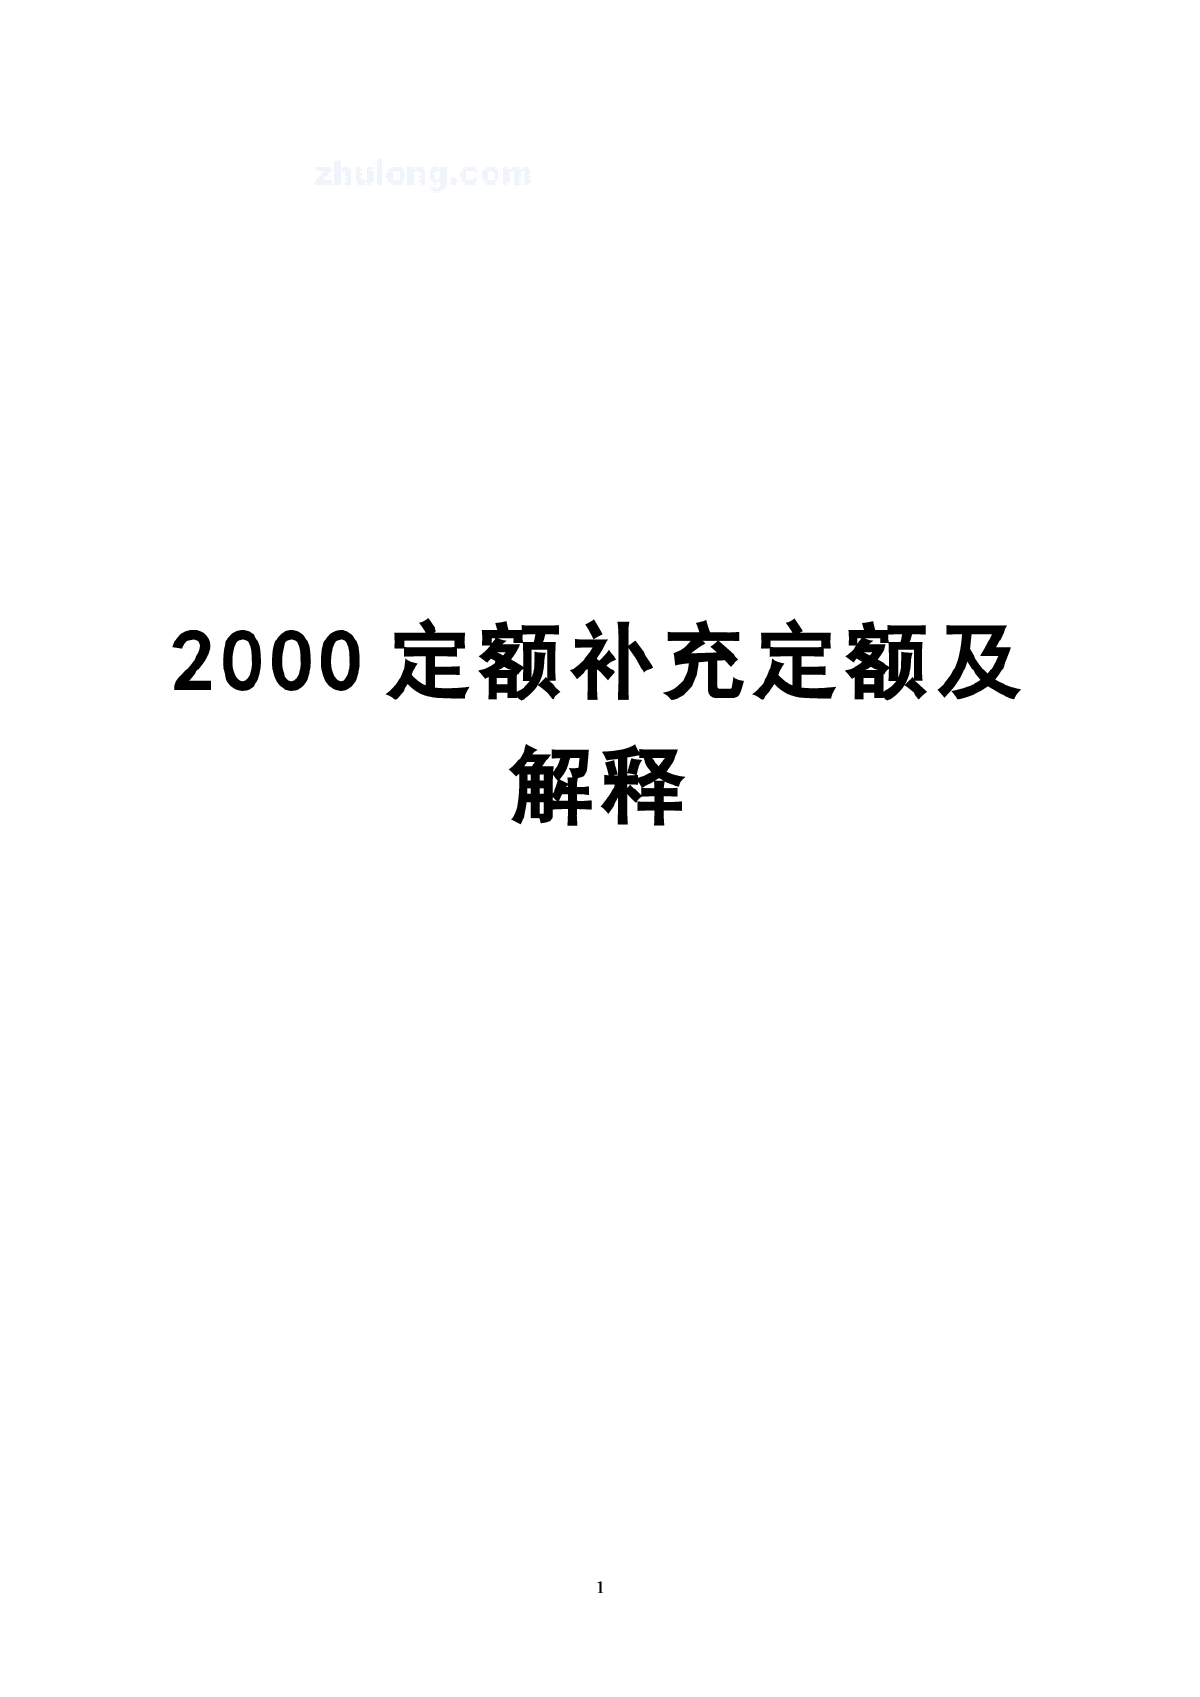 上海市建筑、装饰及房屋修缮工程预算定额(2000)补充定额